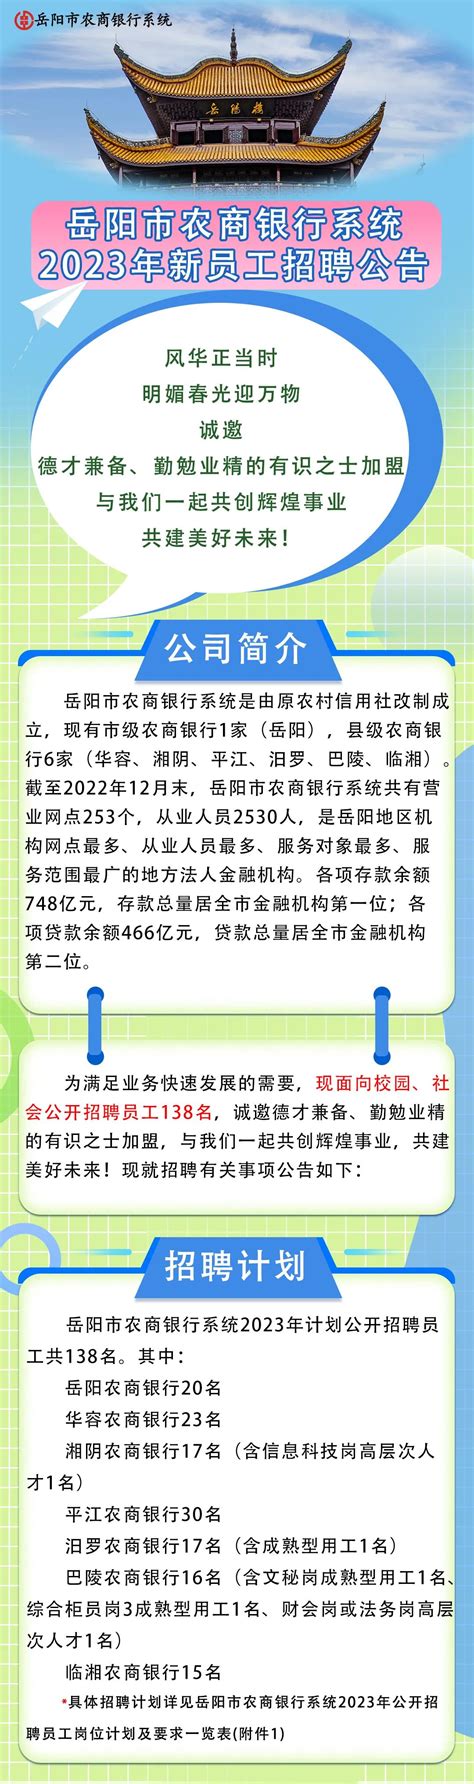 岳阳市总工会专职集体协商指导员招聘面试入围人员名单公示-岳阳市总工会